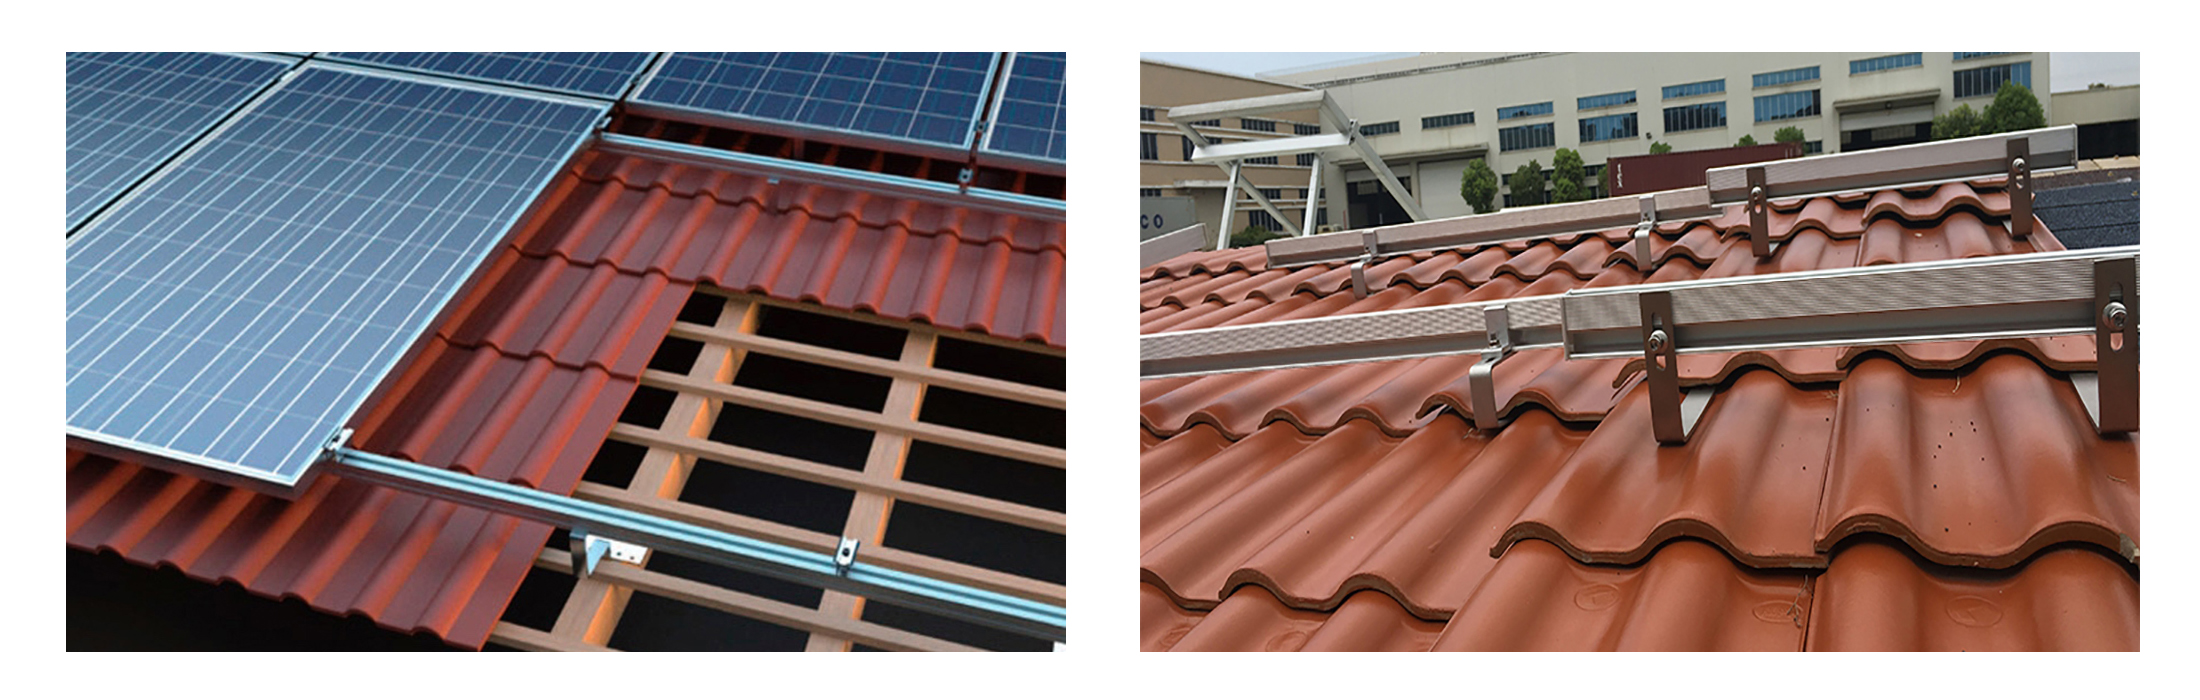 Scaffalature solari sul tetto